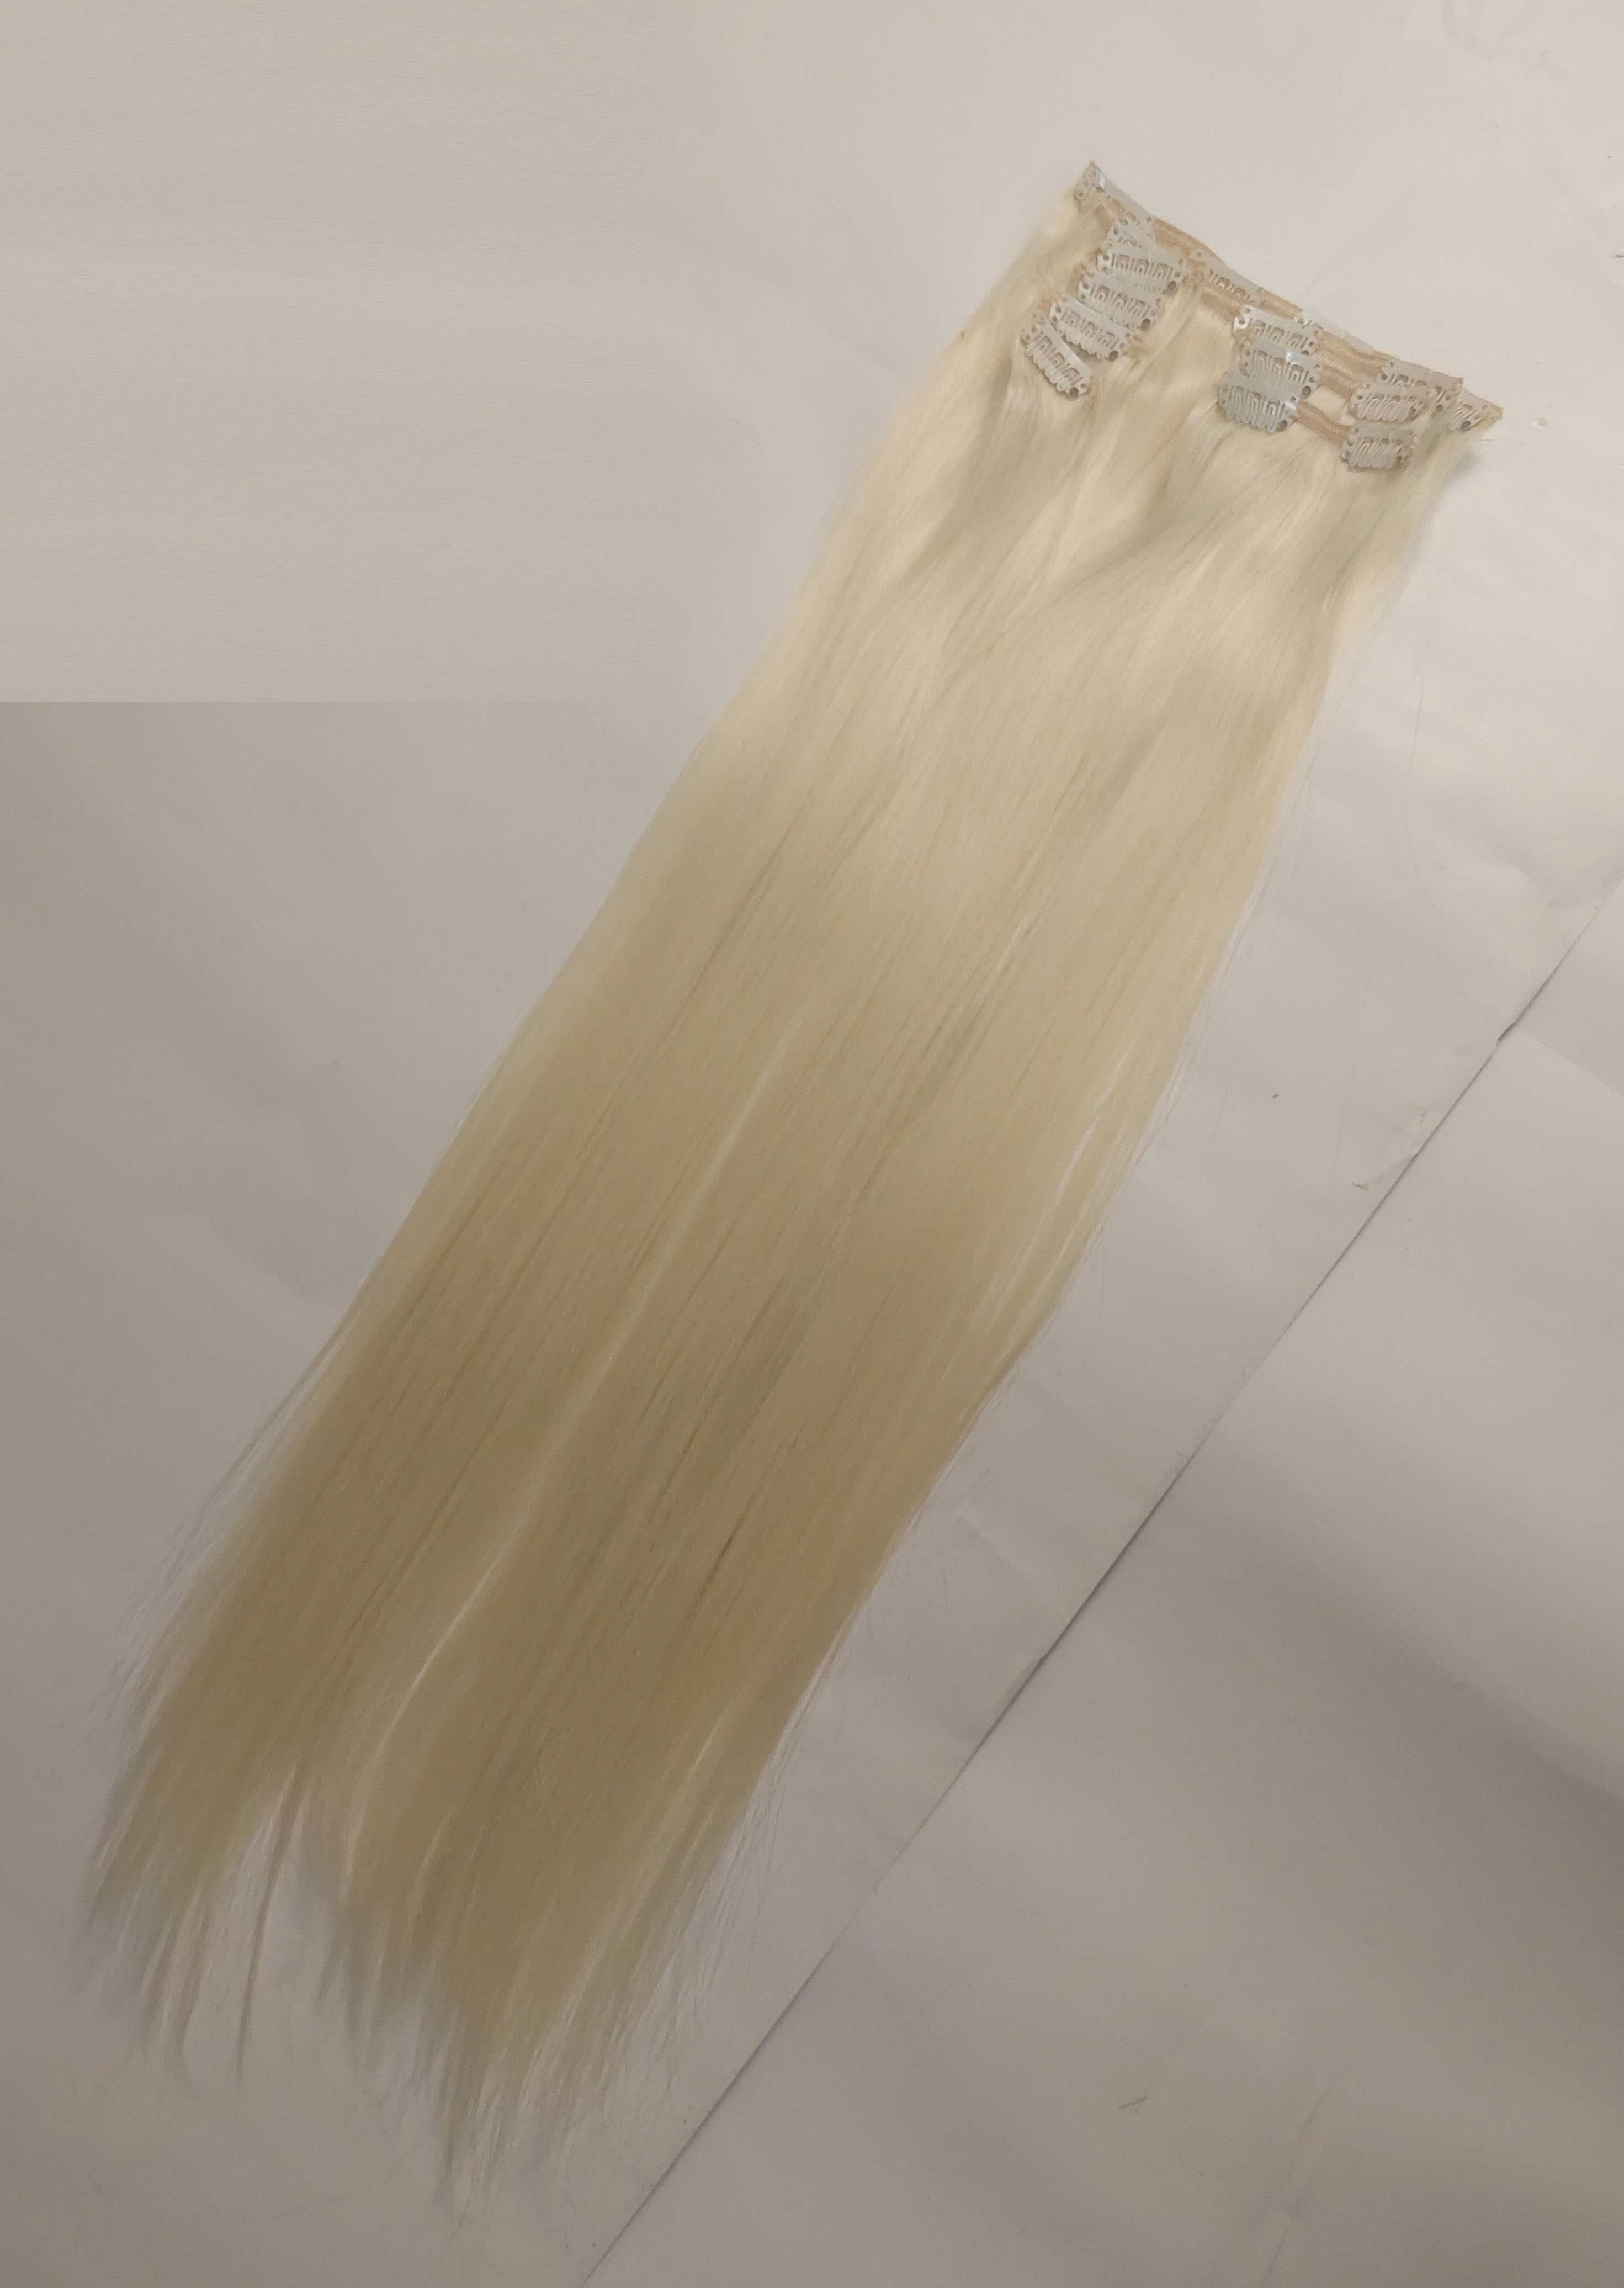 Zestaw włosów clip in ok 57 cm 100 gram - jasny blond